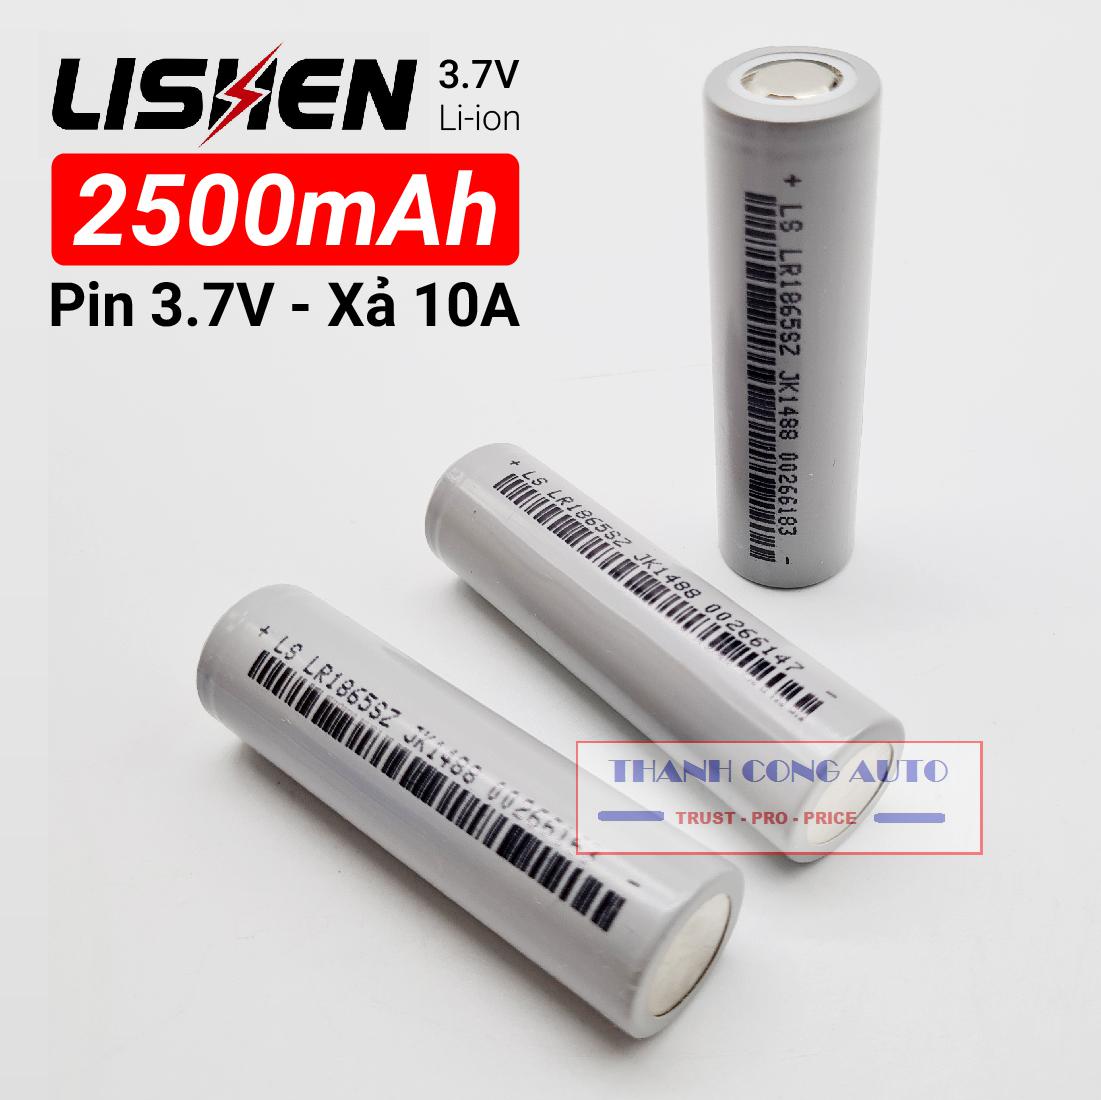 Cell Pin xám Ls Lishen 2500mAh, xả cao 10A, chuyên pin Power Tools (dùng cho Máy khoan, xe đạp điện,máy pos...)